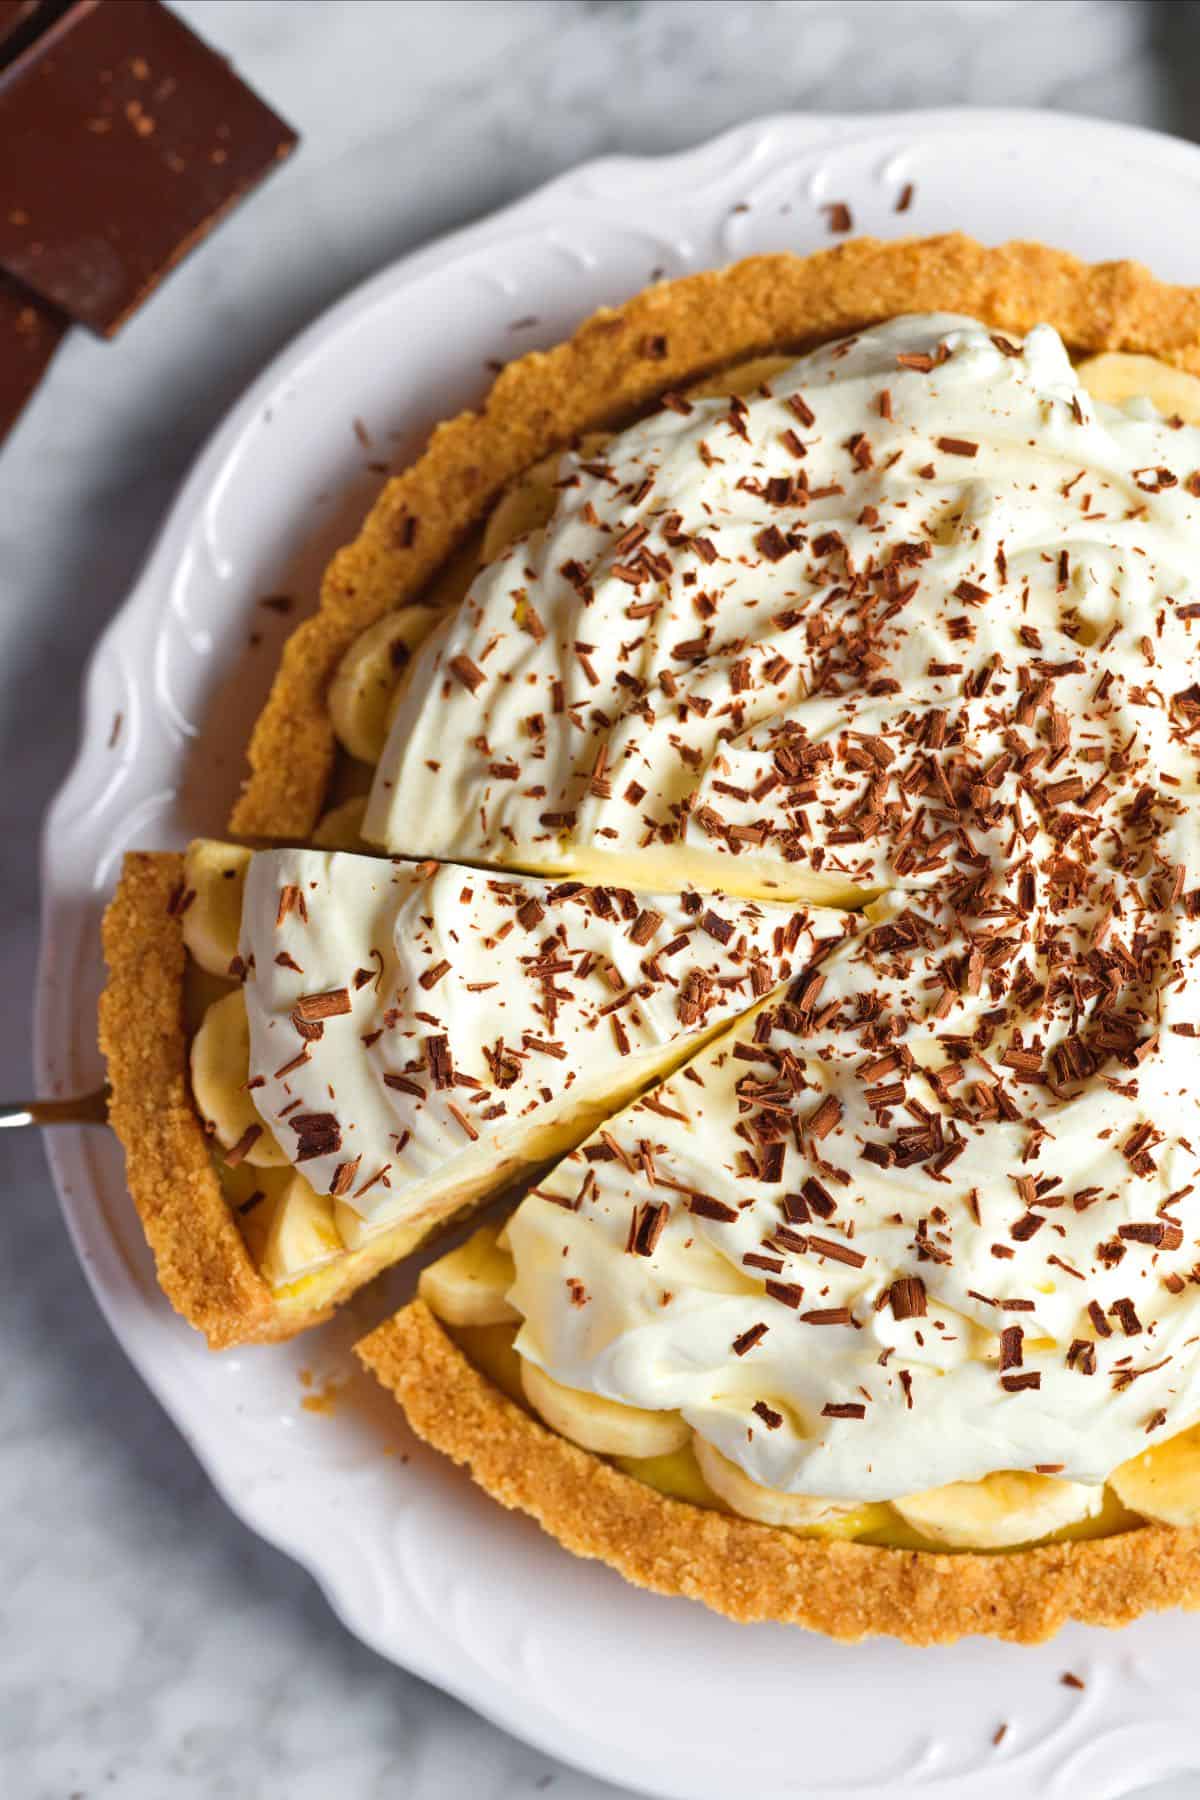 15 best desserts: Banana Cream Pie